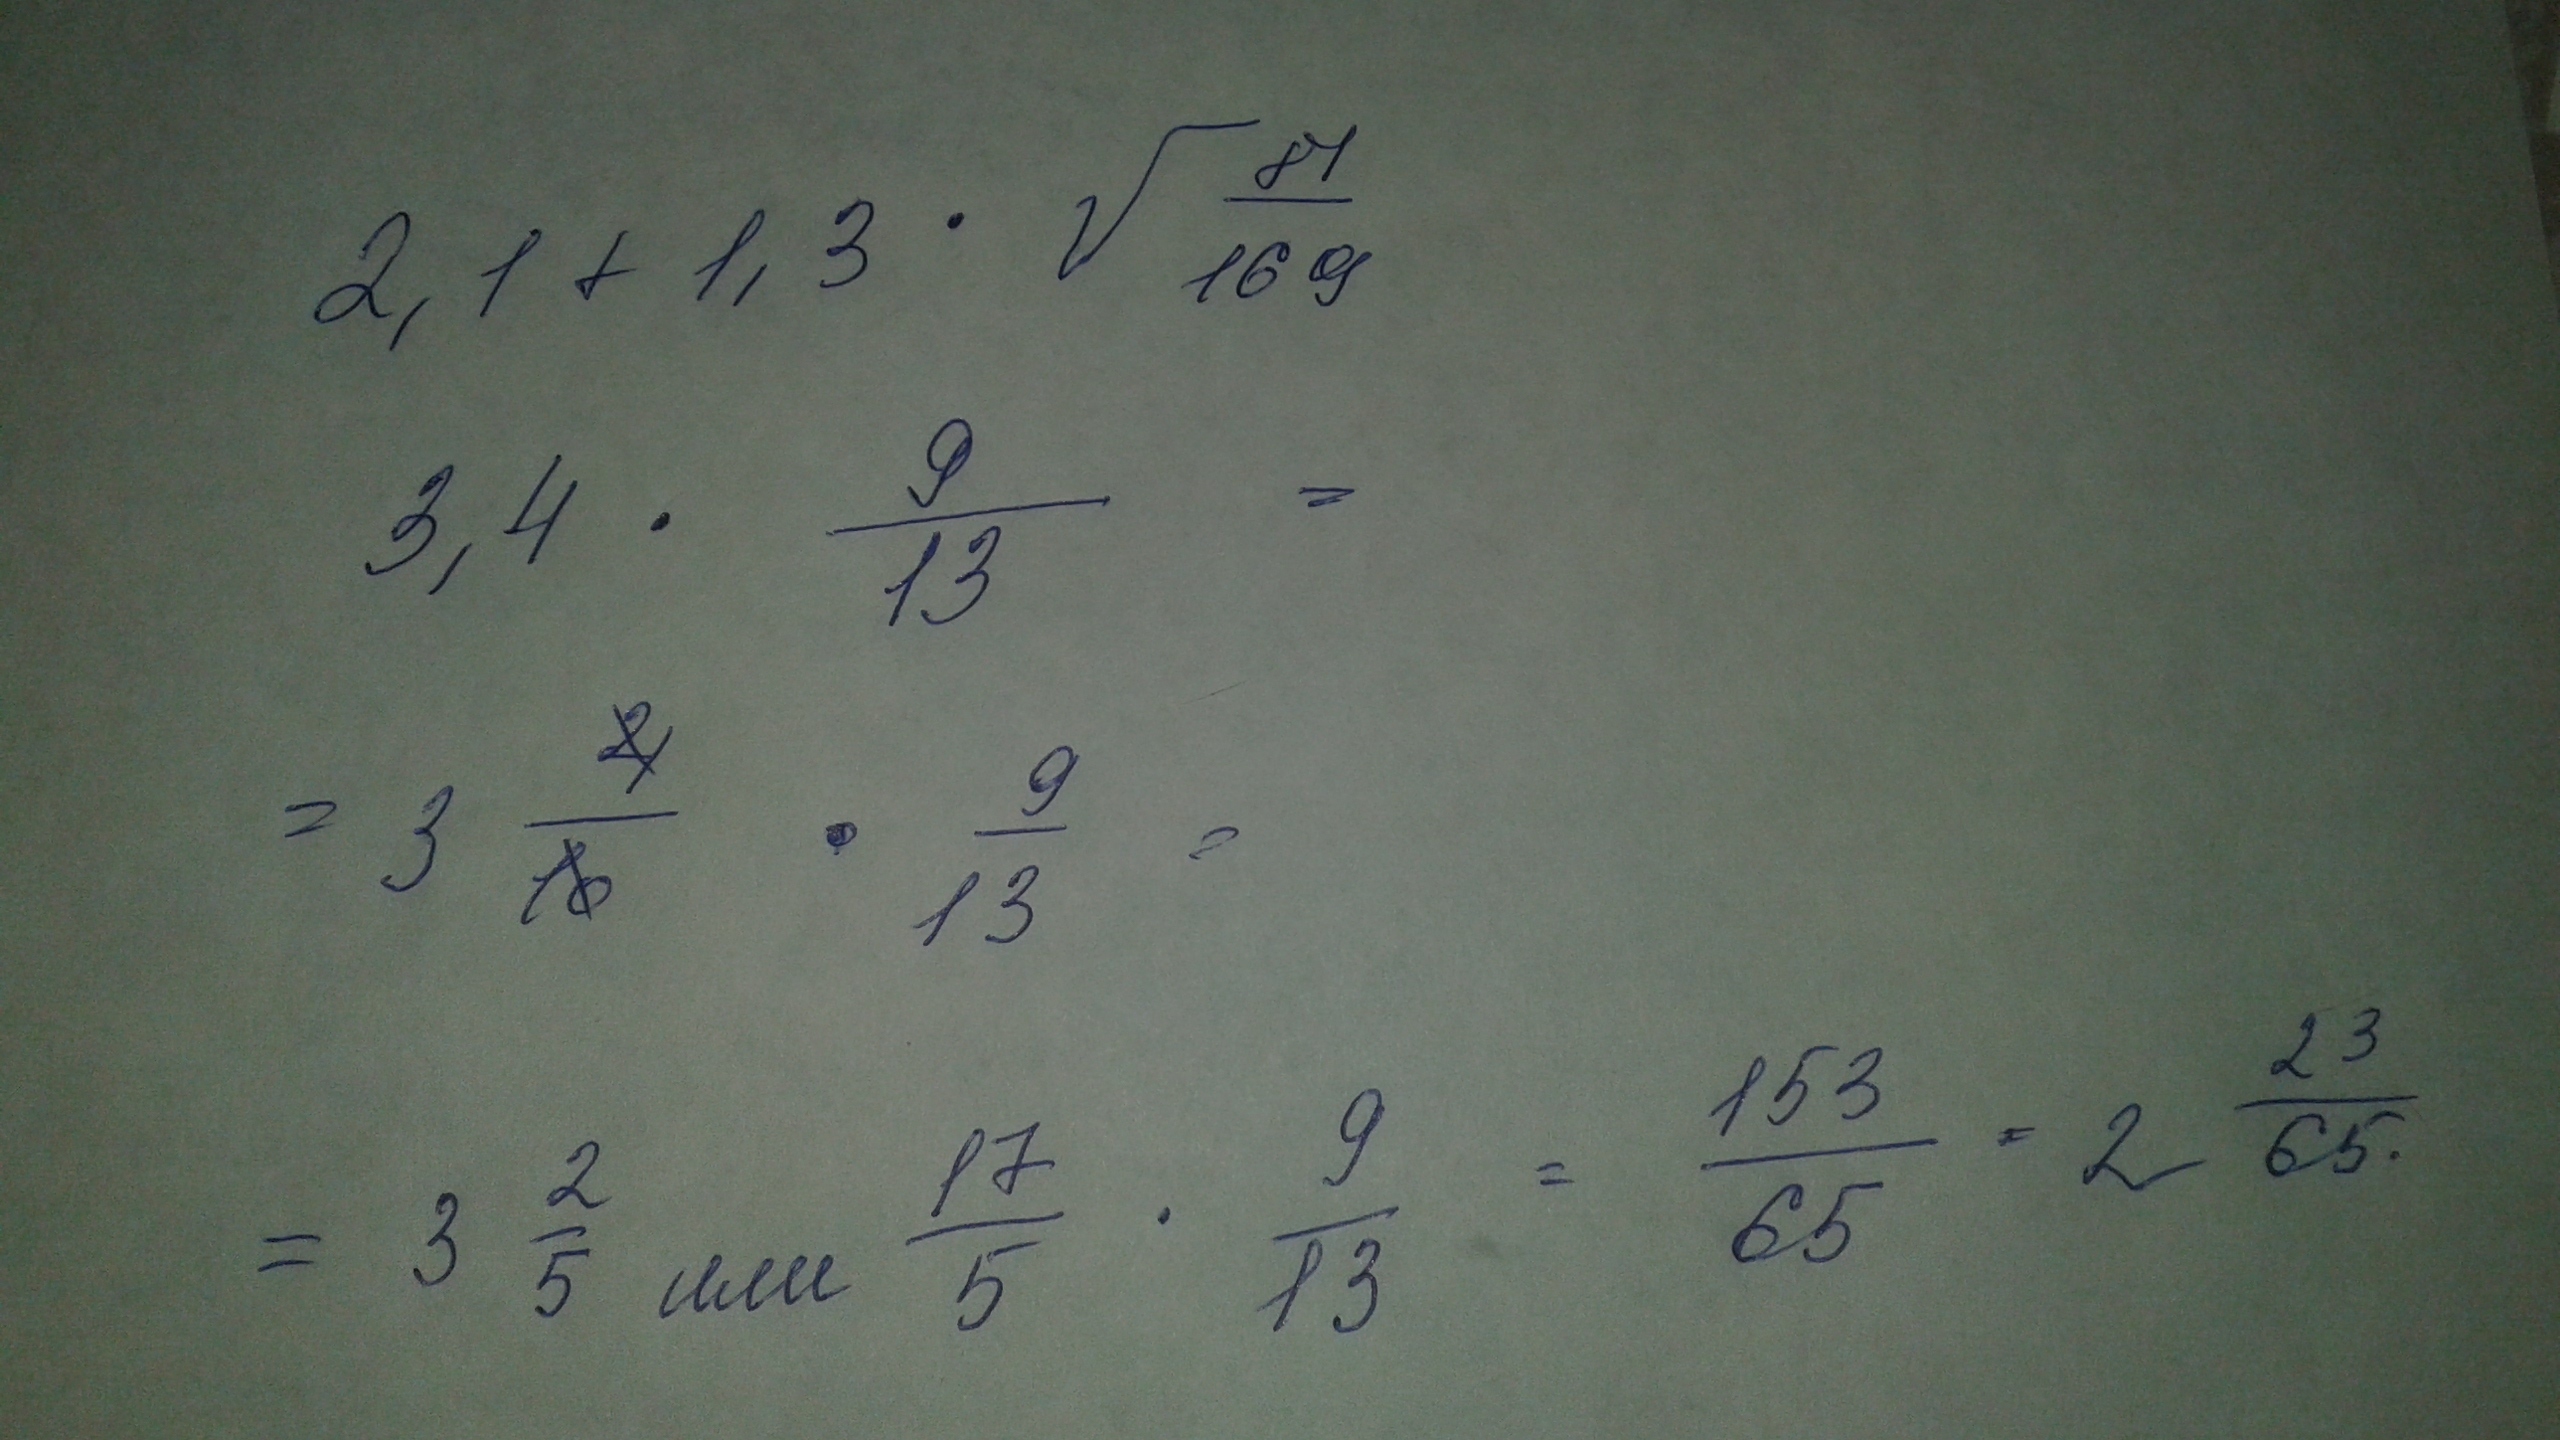 Известно что 3 1 корень 10 3.2. 2 1 1 3 Корень 81 169. 1/Корень из 3. - Корень 2/2 + 1/2 - корень 3/2. 2 Корень 3.